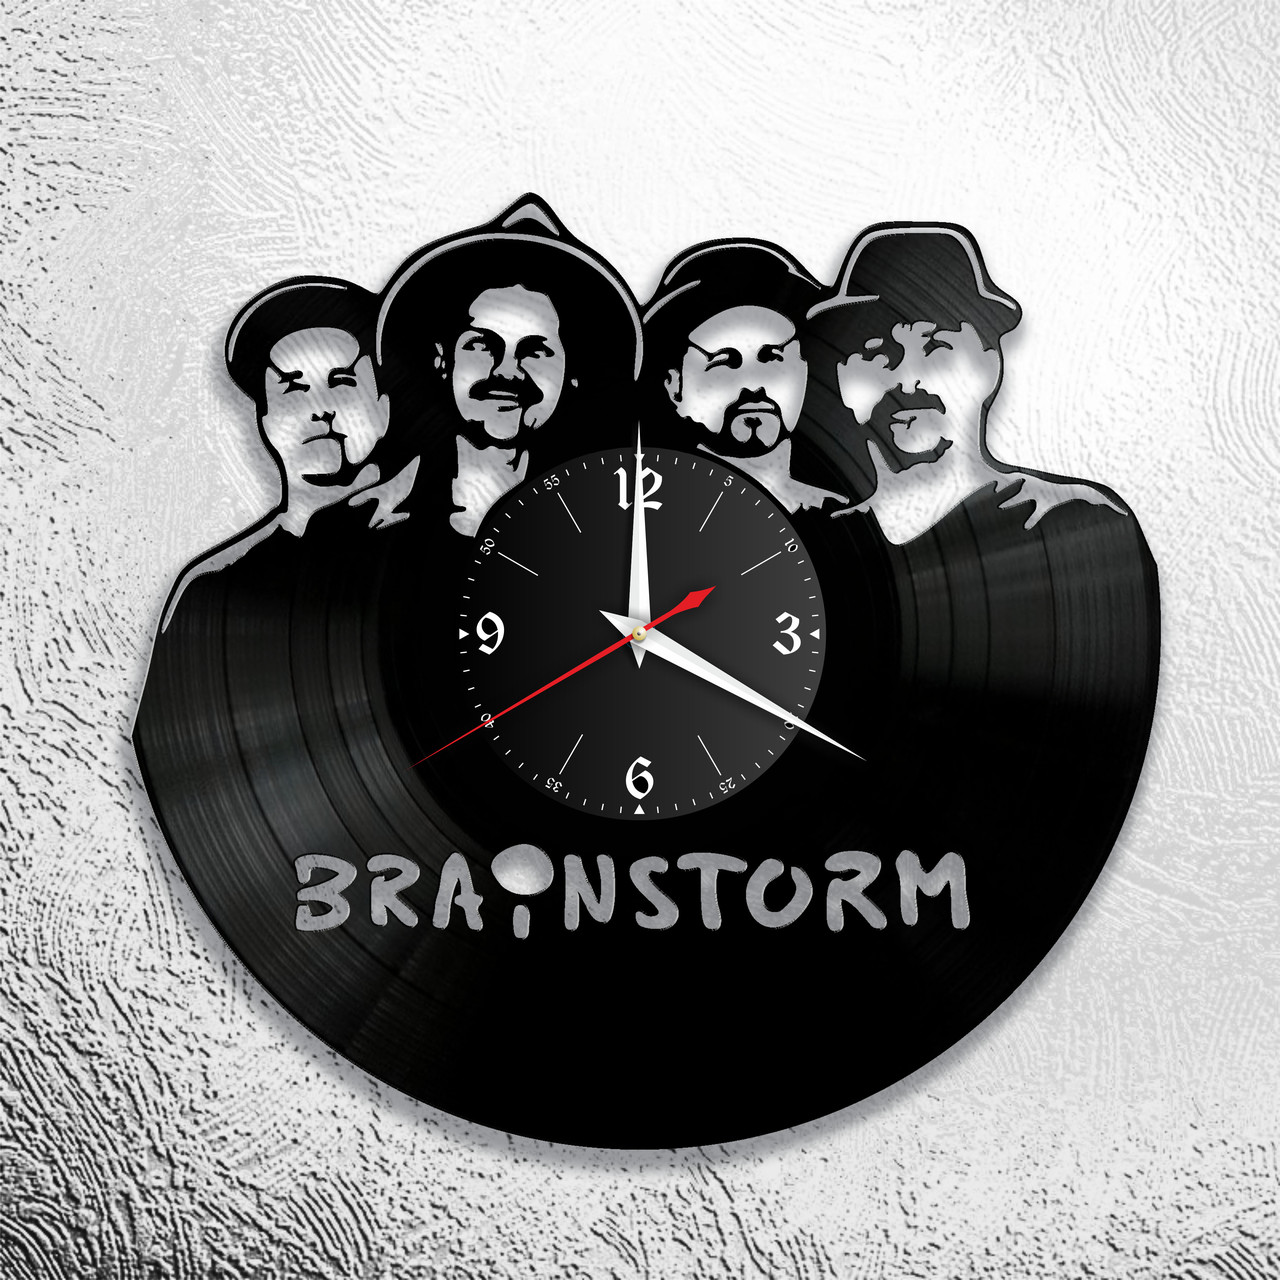 Оригинальные часы из виниловых пластинок "Brainstorm" версия 1, фото 1